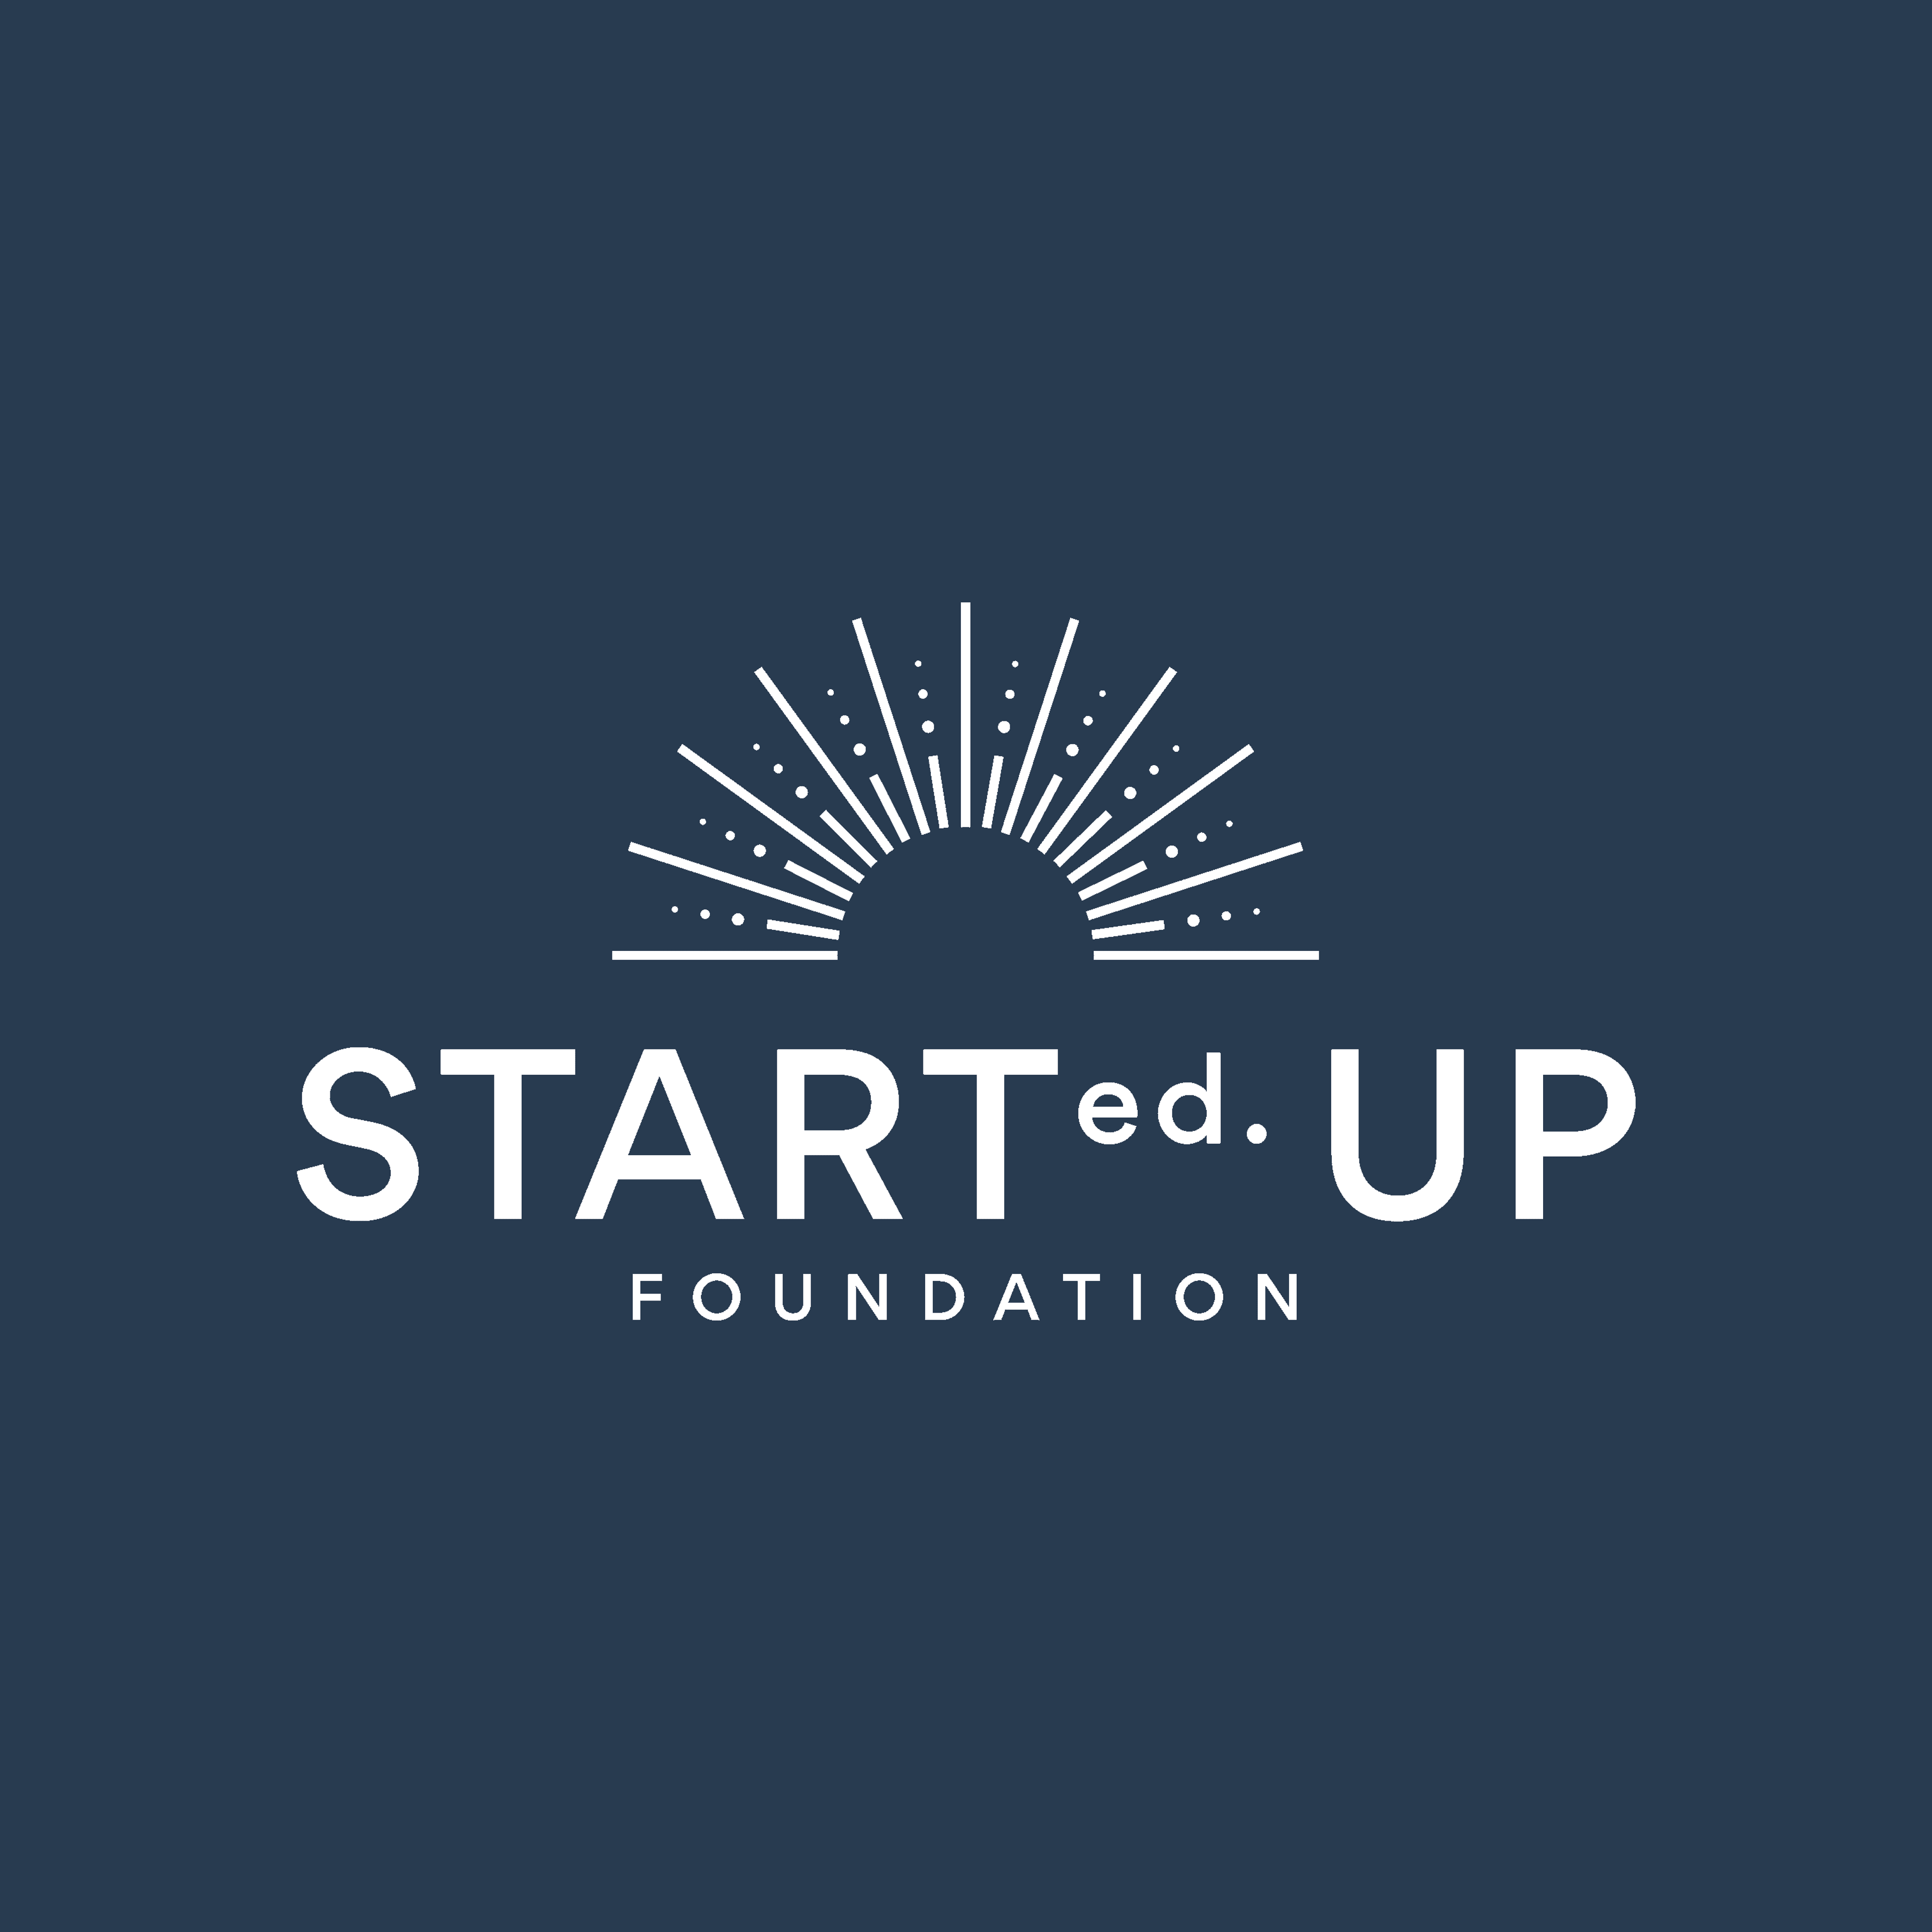 The STARTedUP Foundation logo